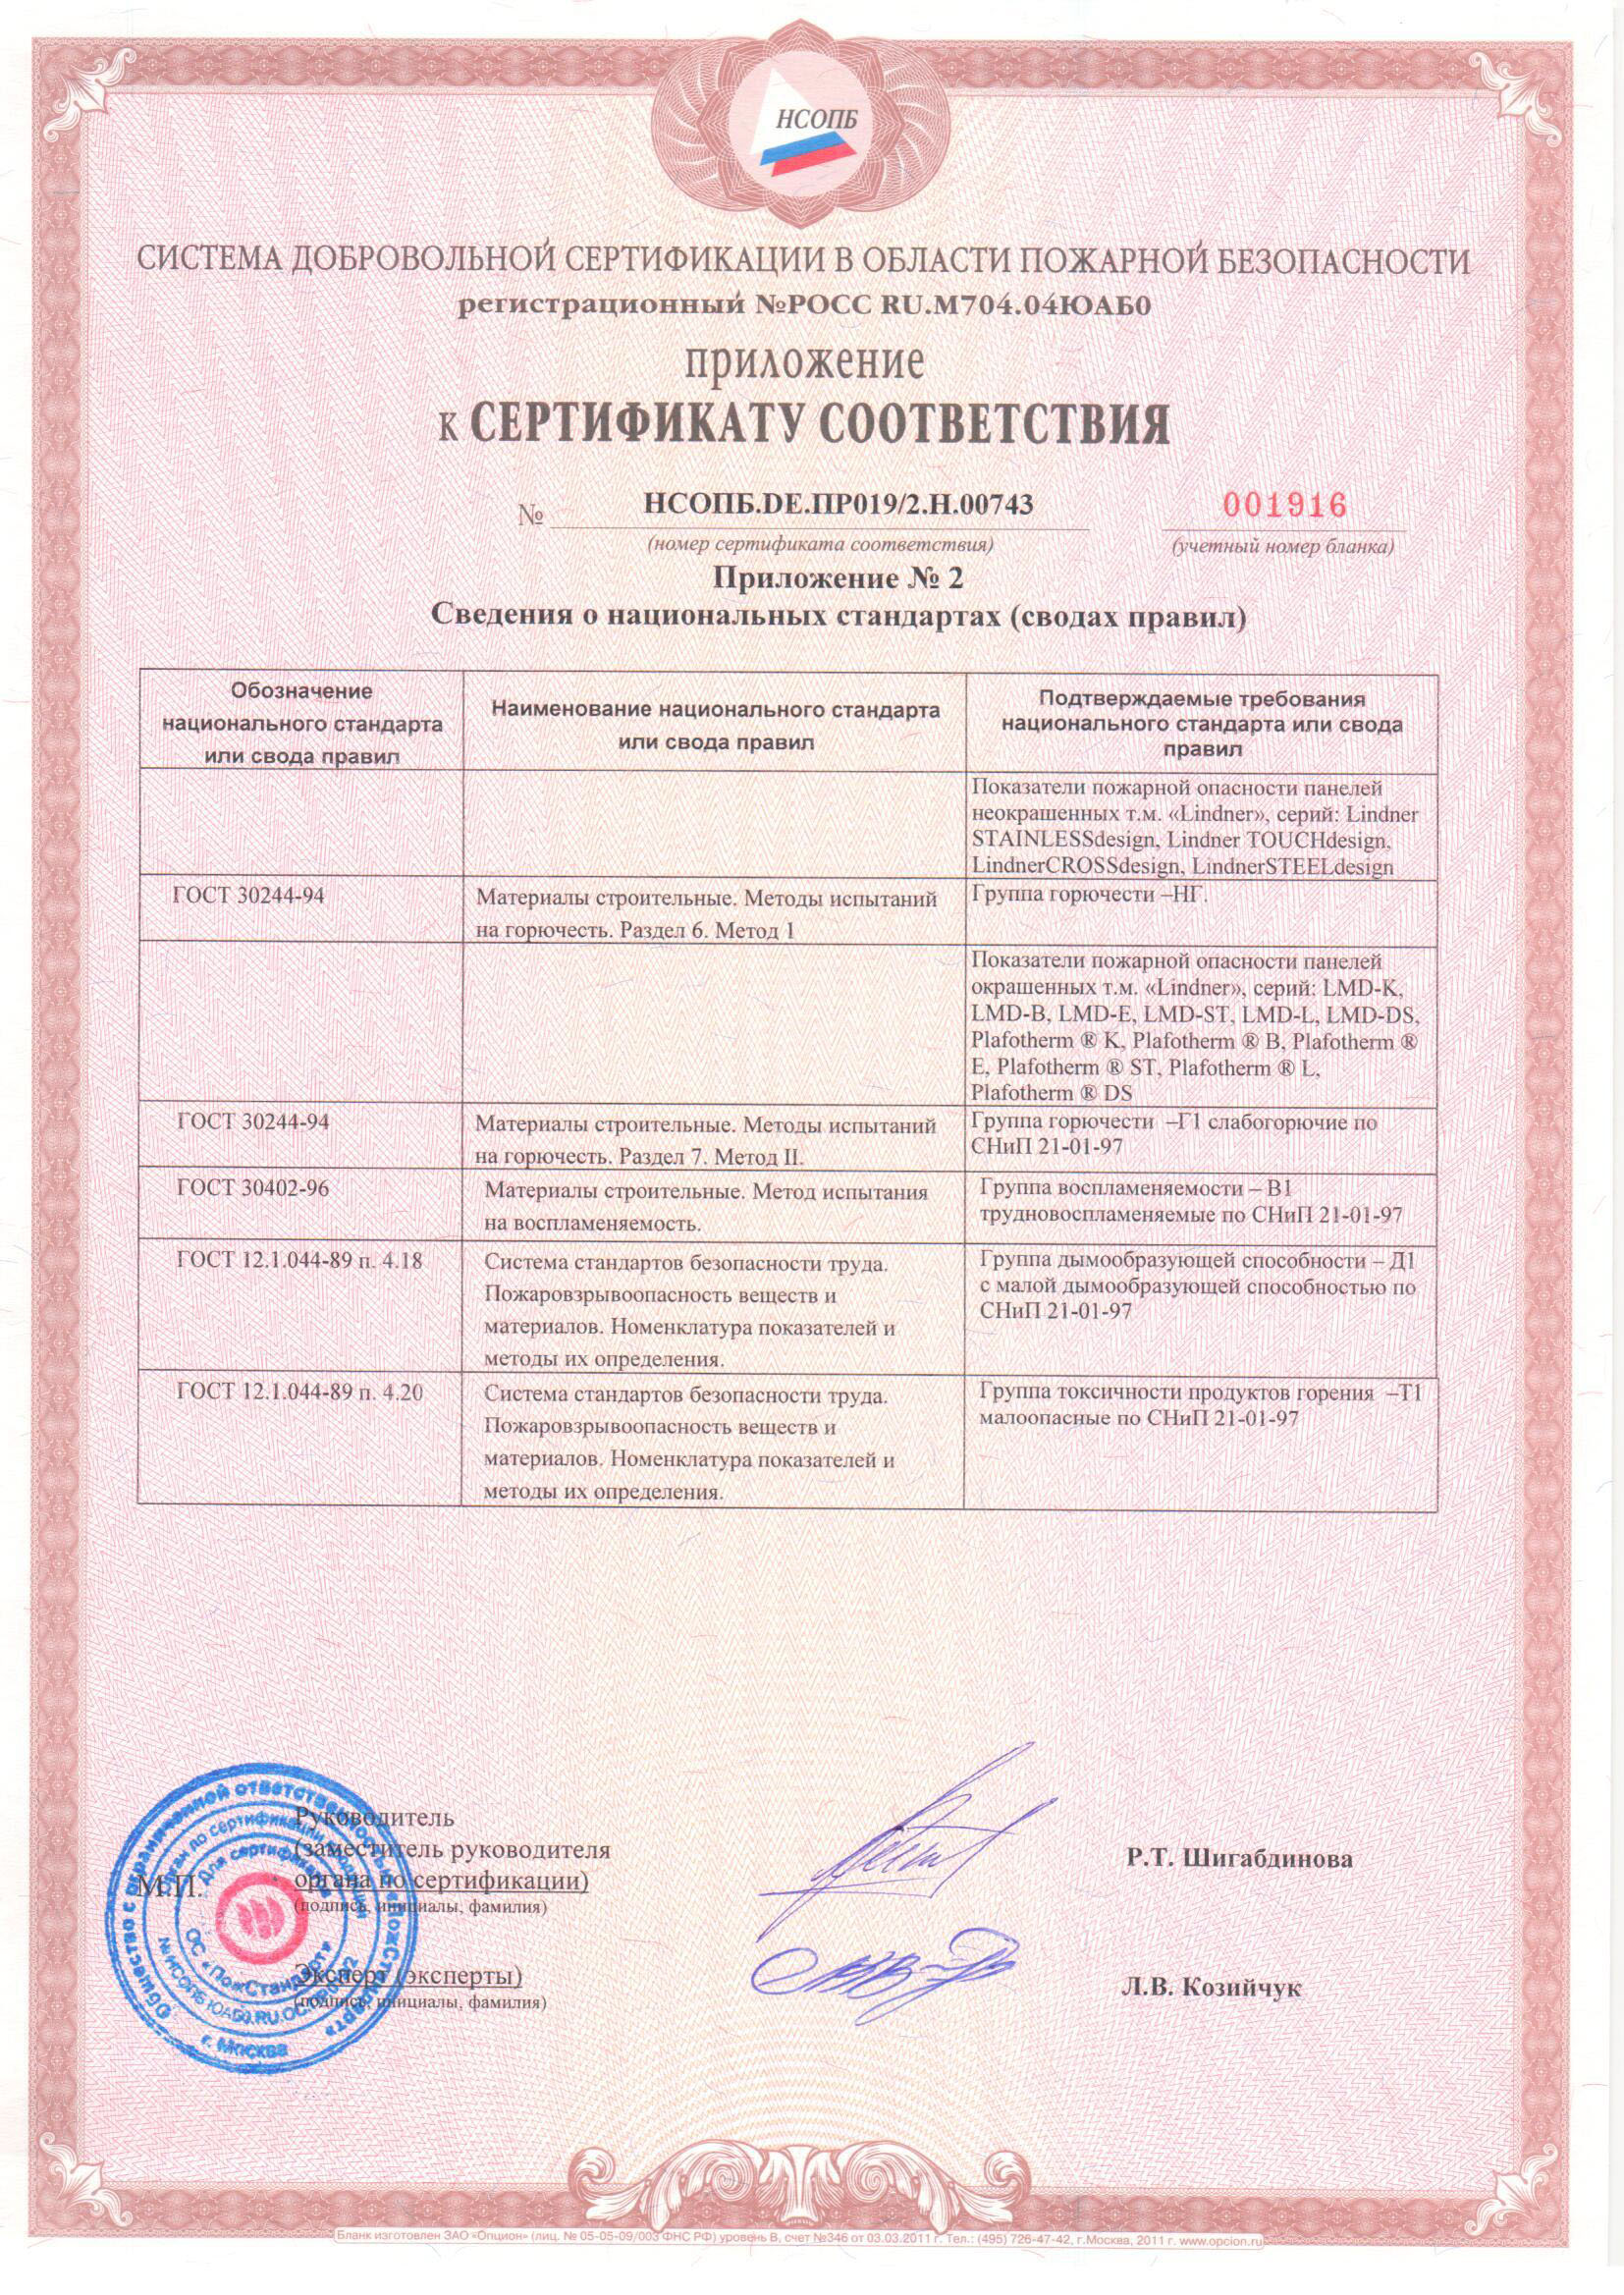 Приложение 2 к сертификату соответствия ( панели стальные потолочные и стеновые т.м Lindner)